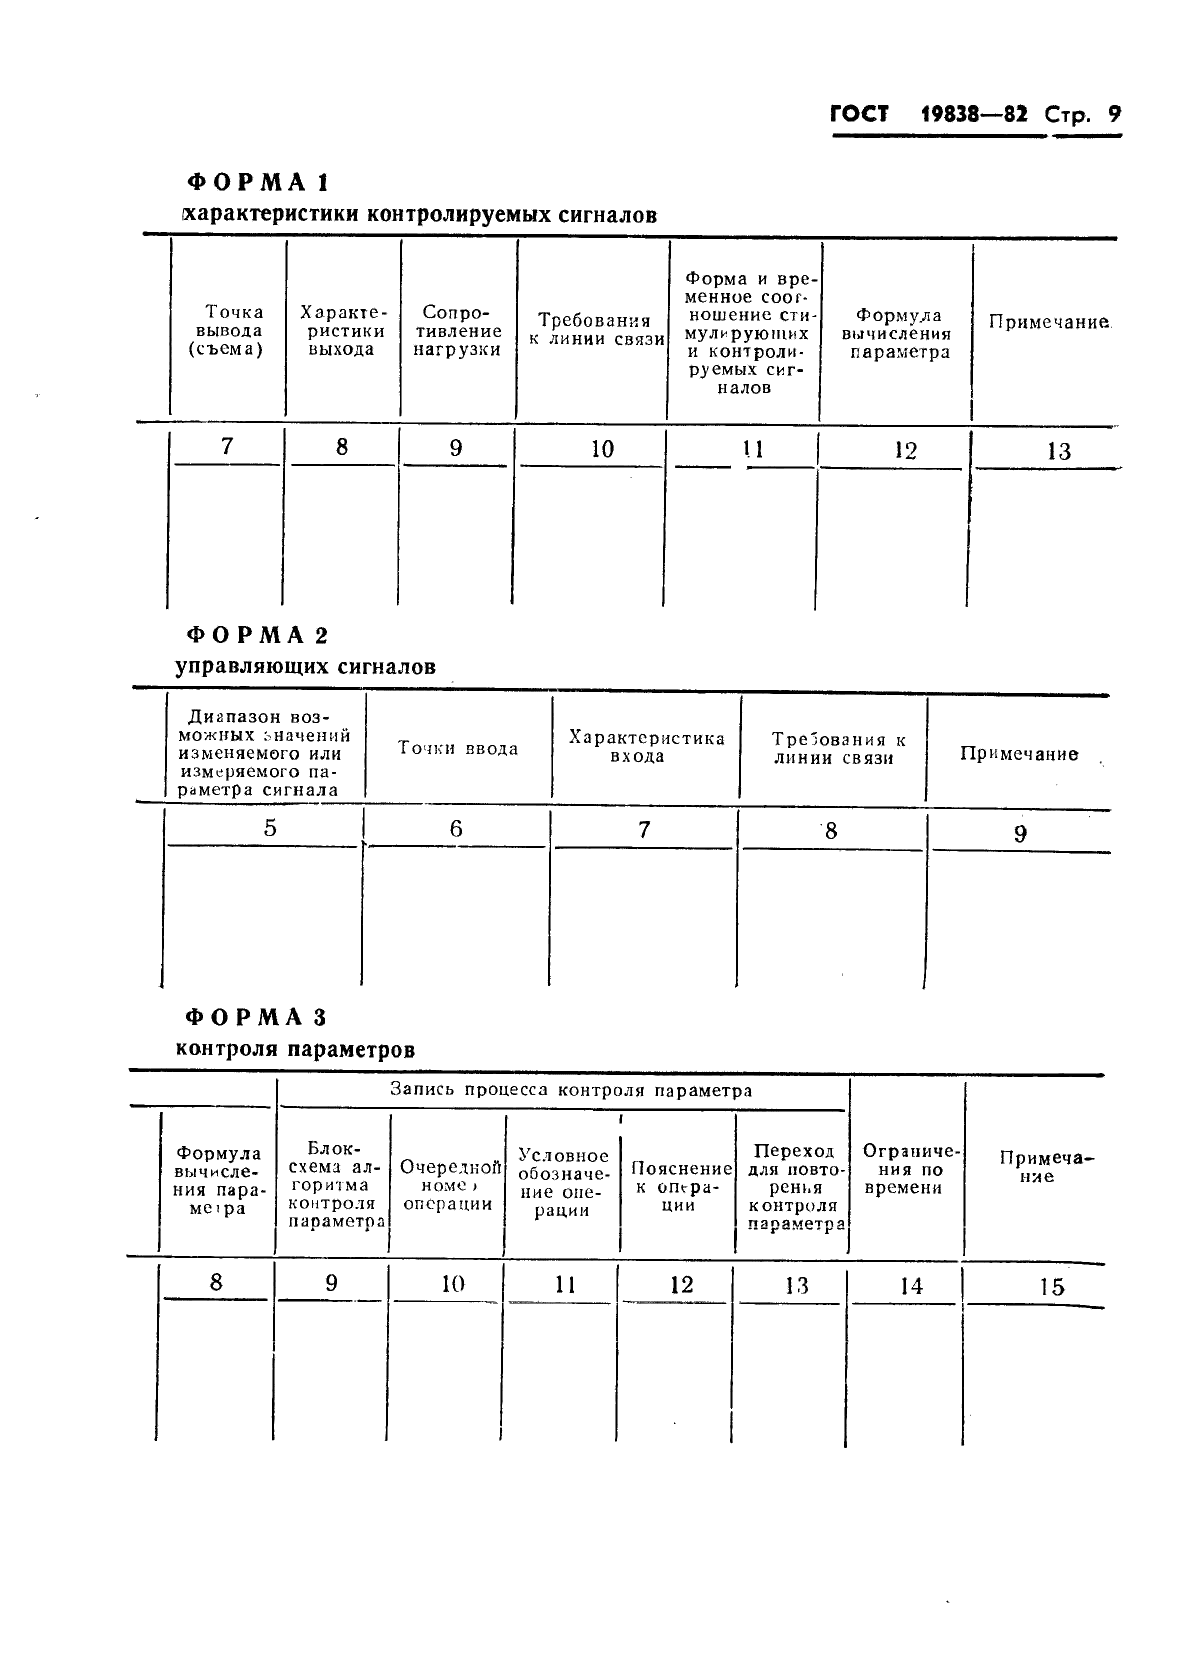 ГОСТ 19838-82 Характеристика контролепригодности изделий авиационной техники. Правила изложения и оформления (фото 10 из 21)